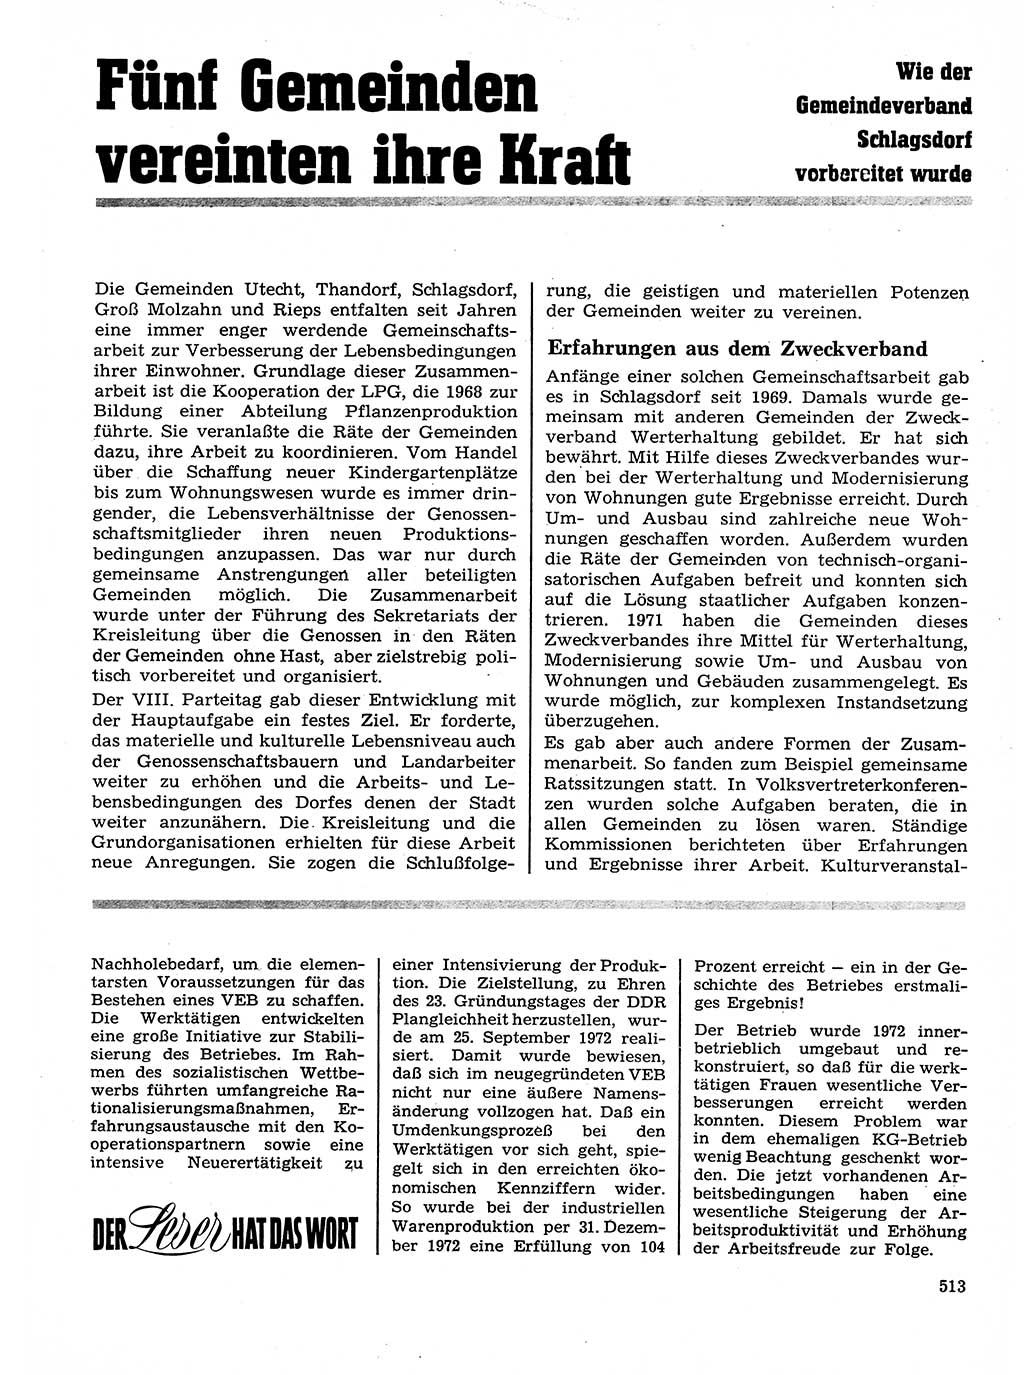 Neuer Weg (NW), Organ des Zentralkomitees (ZK) der SED (Sozialistische Einheitspartei Deutschlands) für Fragen des Parteilebens, 28. Jahrgang [Deutsche Demokratische Republik (DDR)] 1973, Seite 513 (NW ZK SED DDR 1973, S. 513)